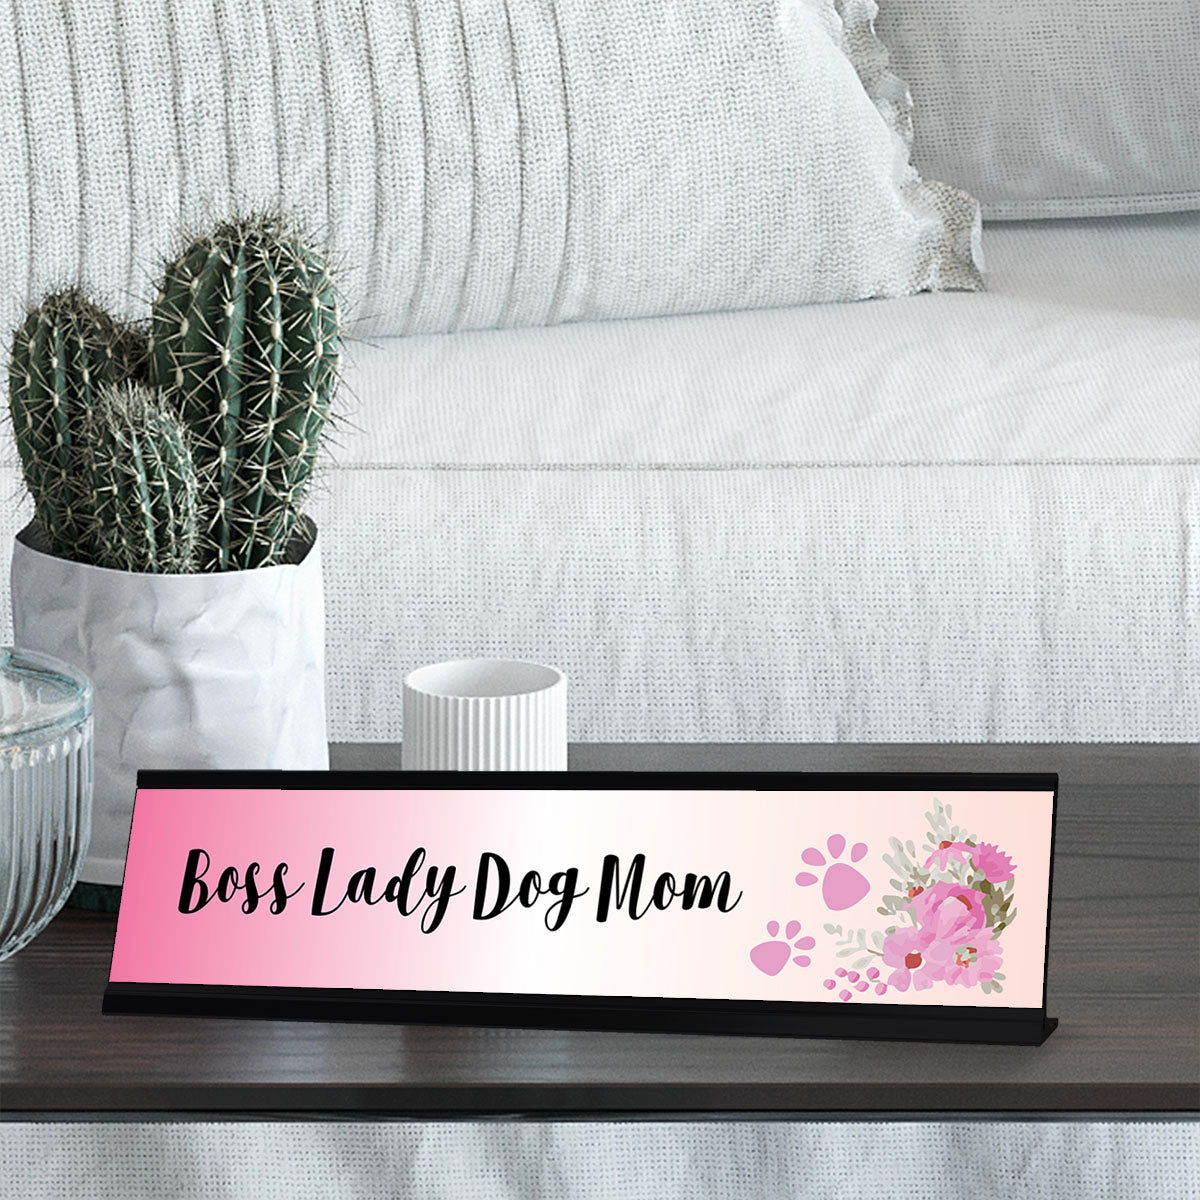 Boss Lady Dog Mom, Pink Designer Desk Sign Nameplate (2 x 8")